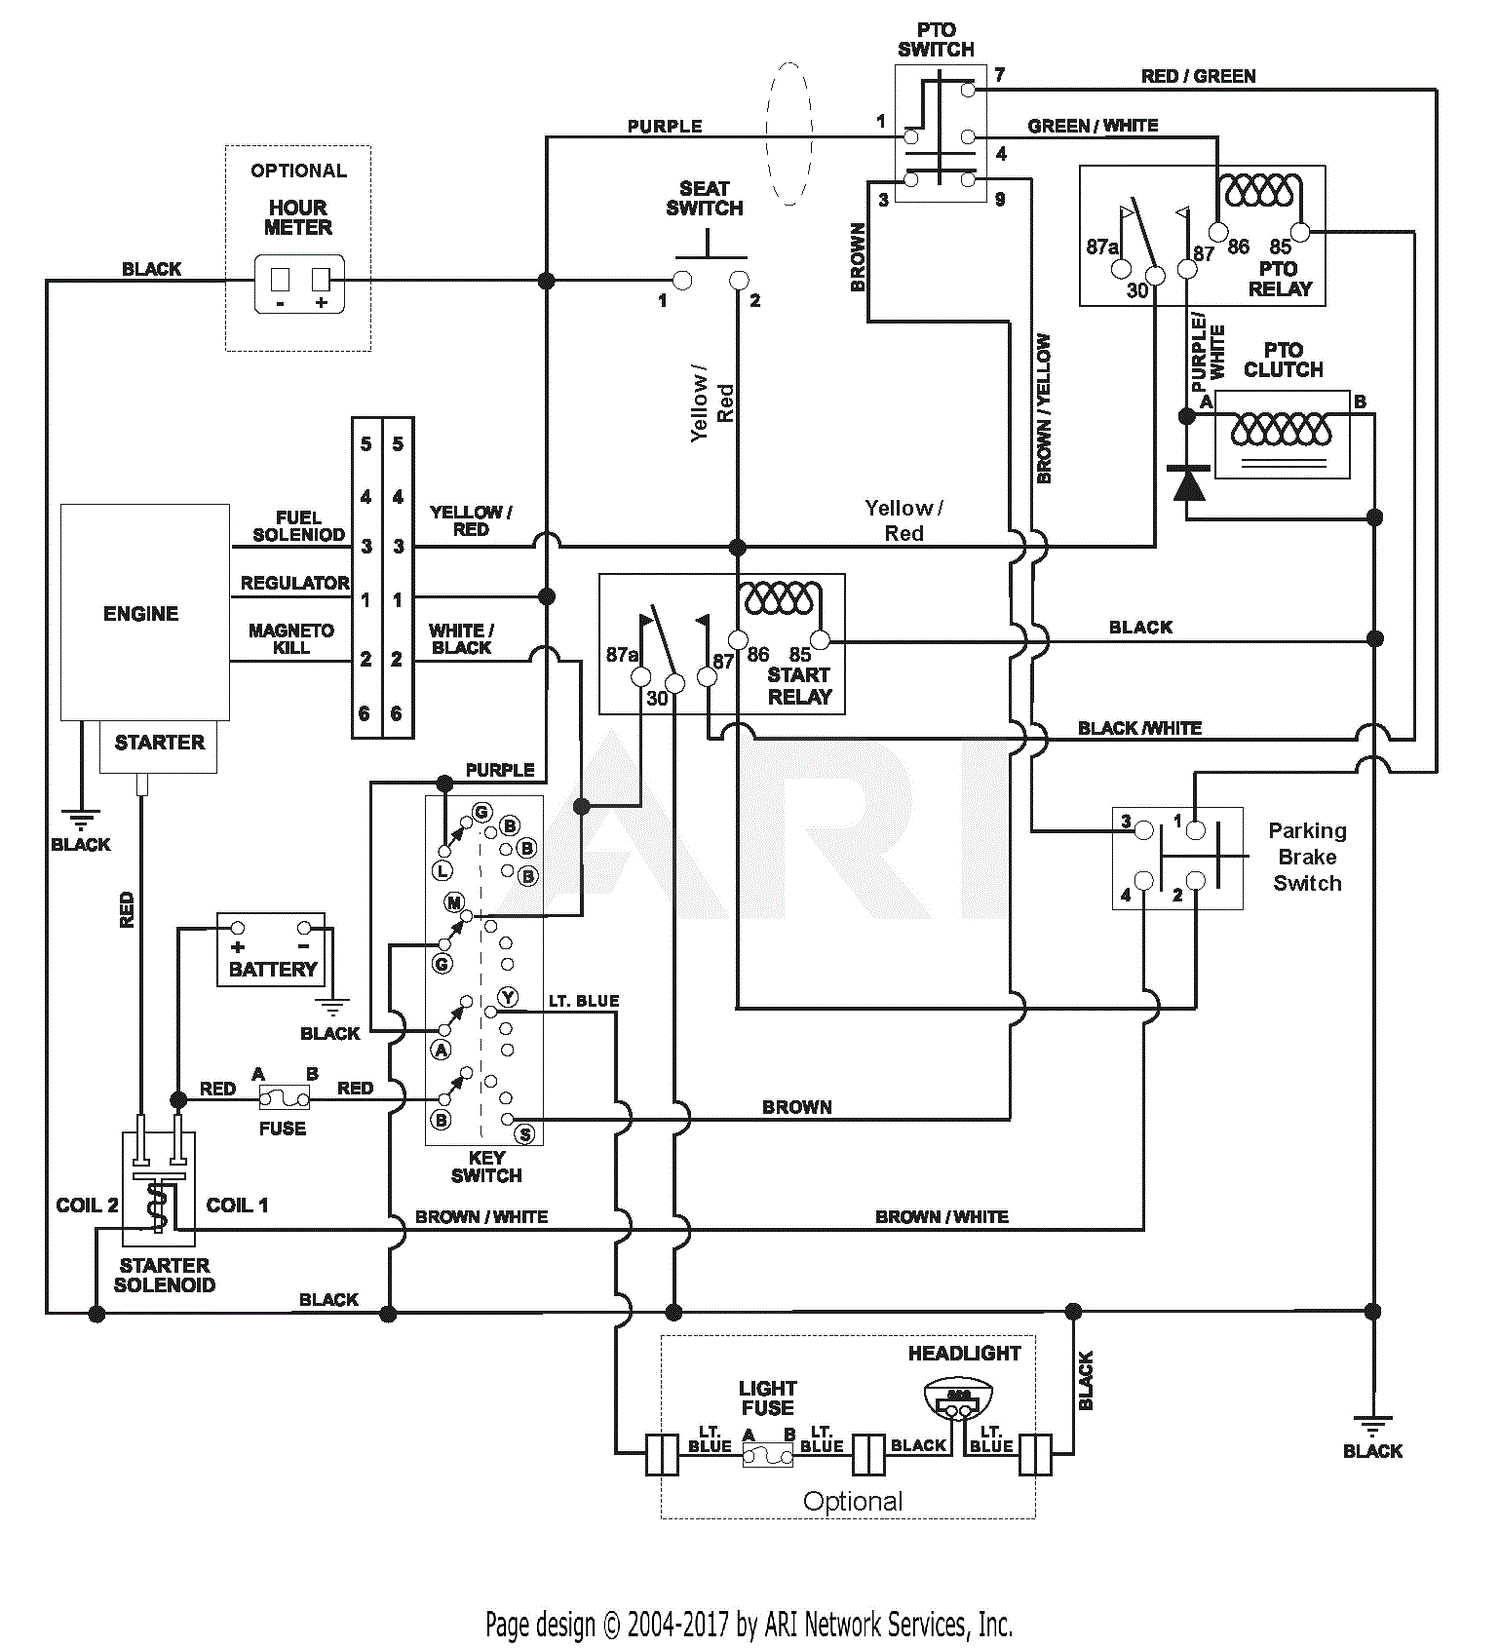 kohler k301 wiring diagram - Wiring Diagram